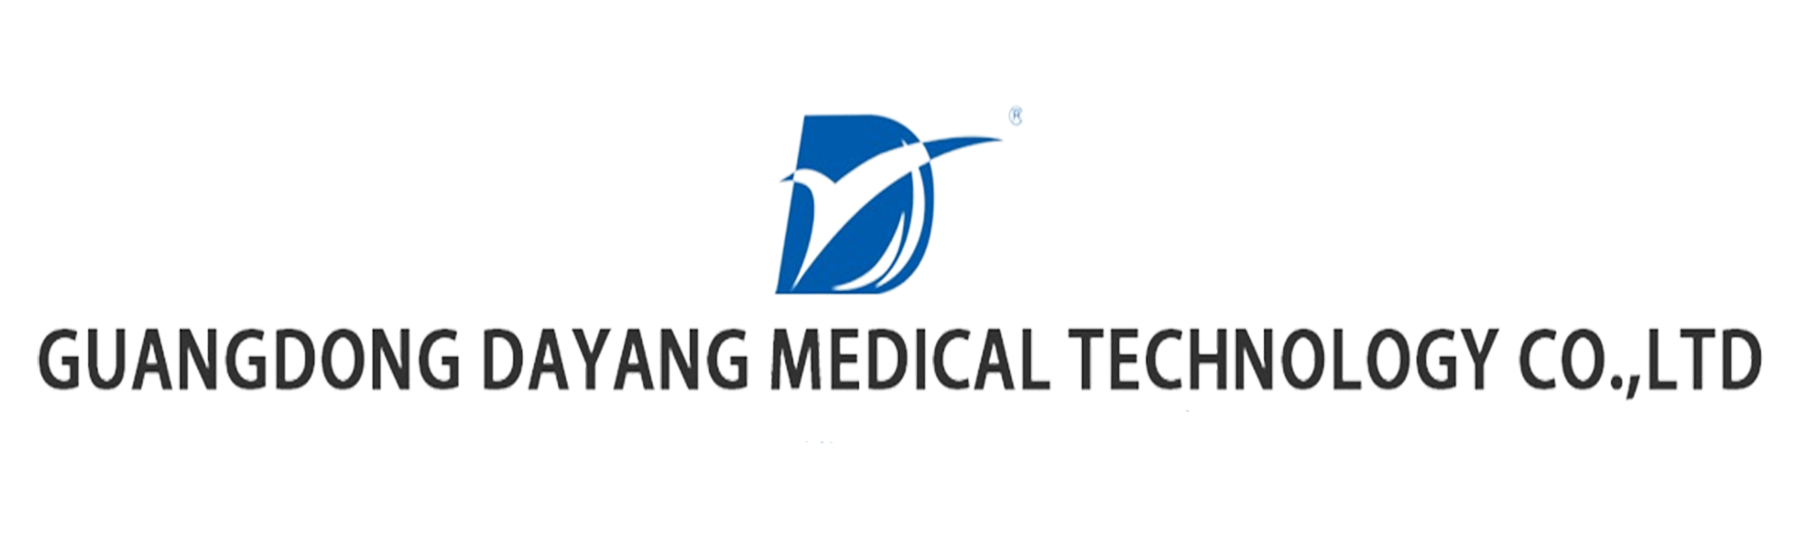 GUANGDONG DAYANG MEDICAL TECHNOLOGY CO., LTD.